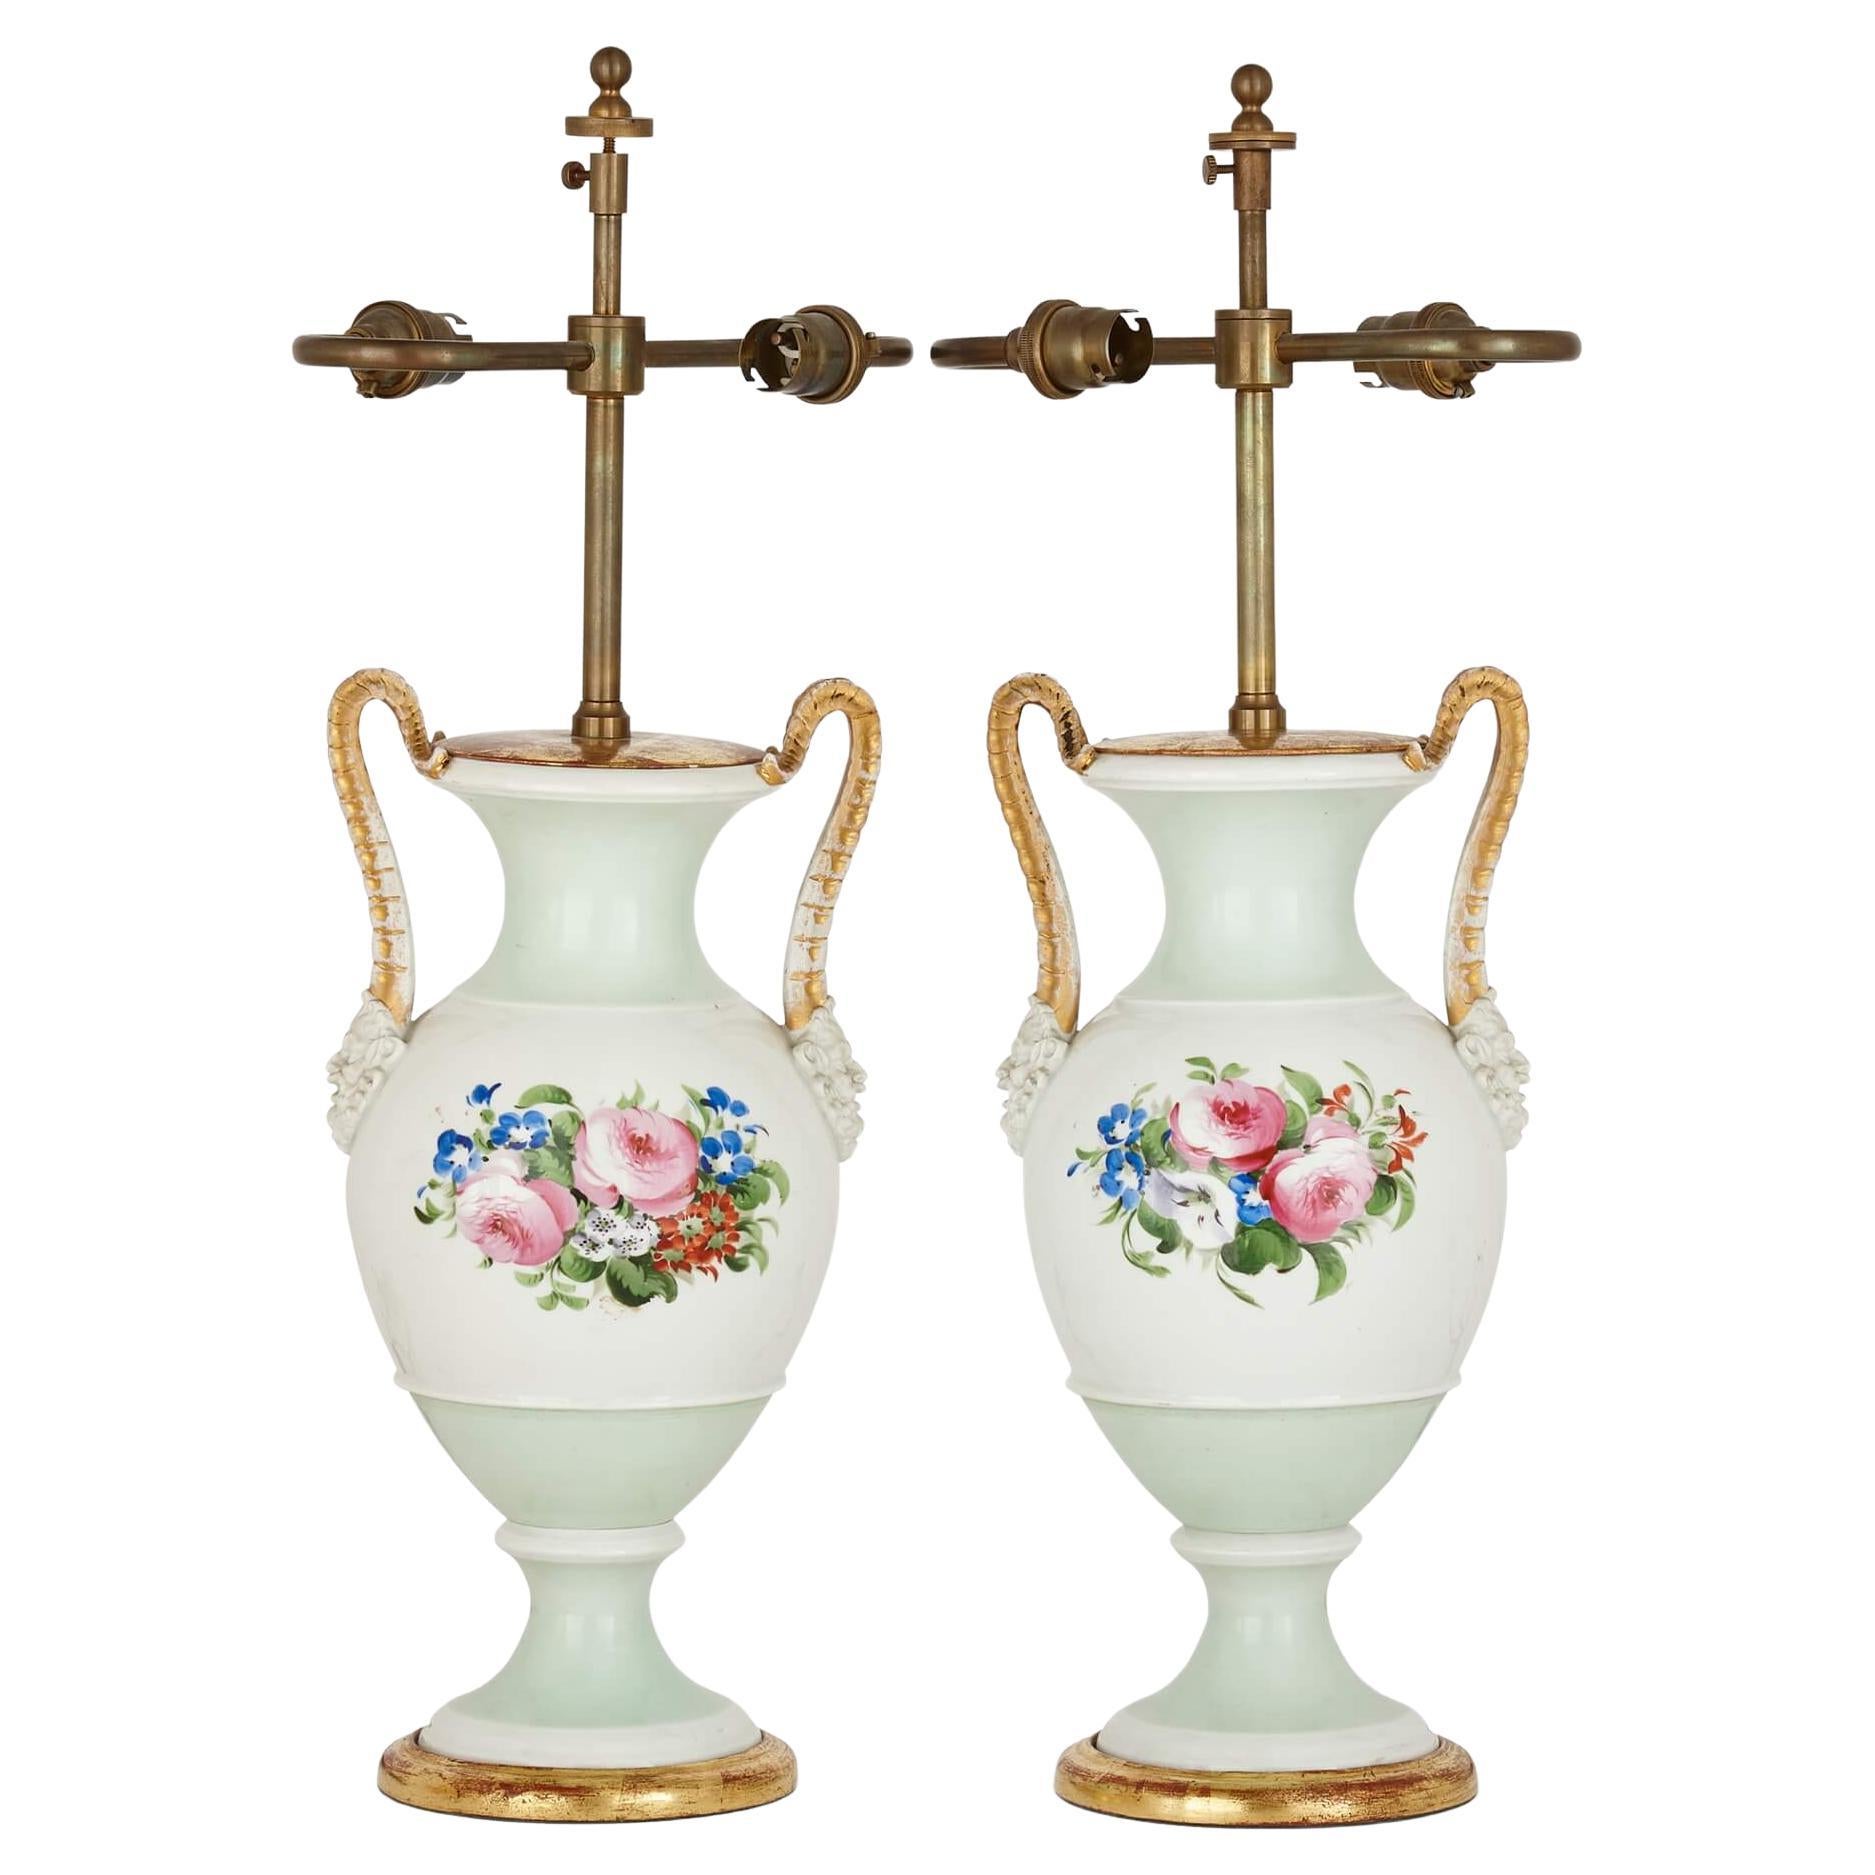 Paire de lampes anciennes en forme de vase en porcelaine avec décoration florale